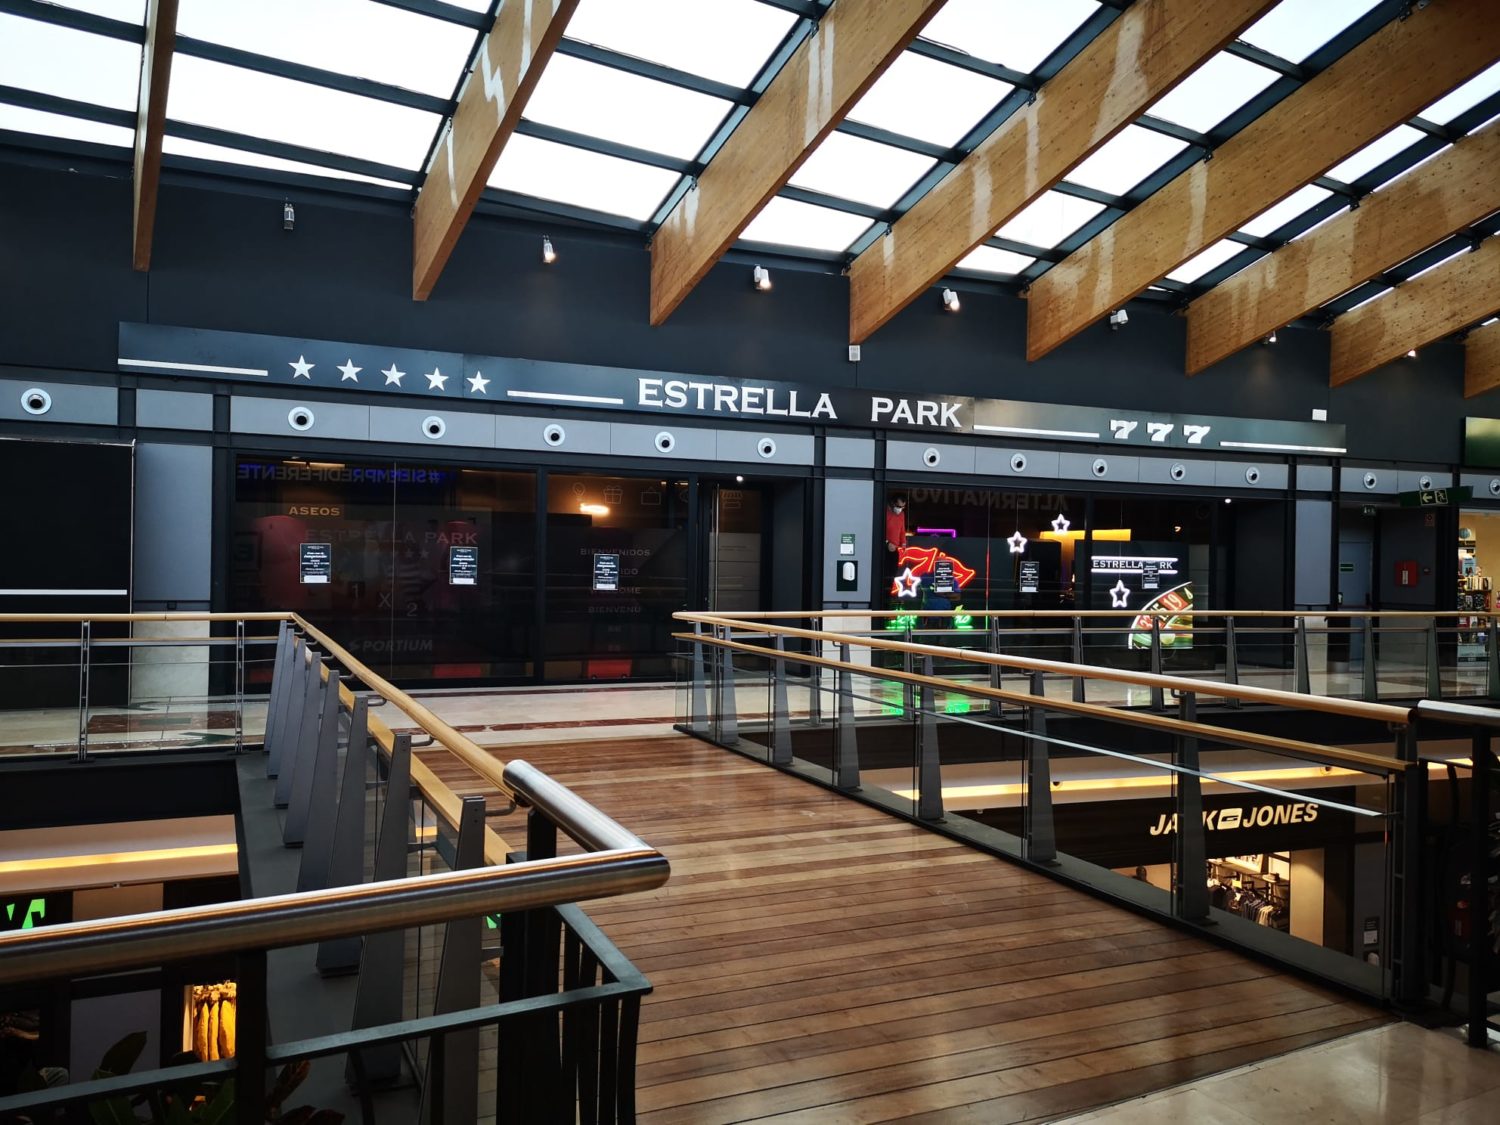 Estrella Park abre en Espacio León - Just Retail